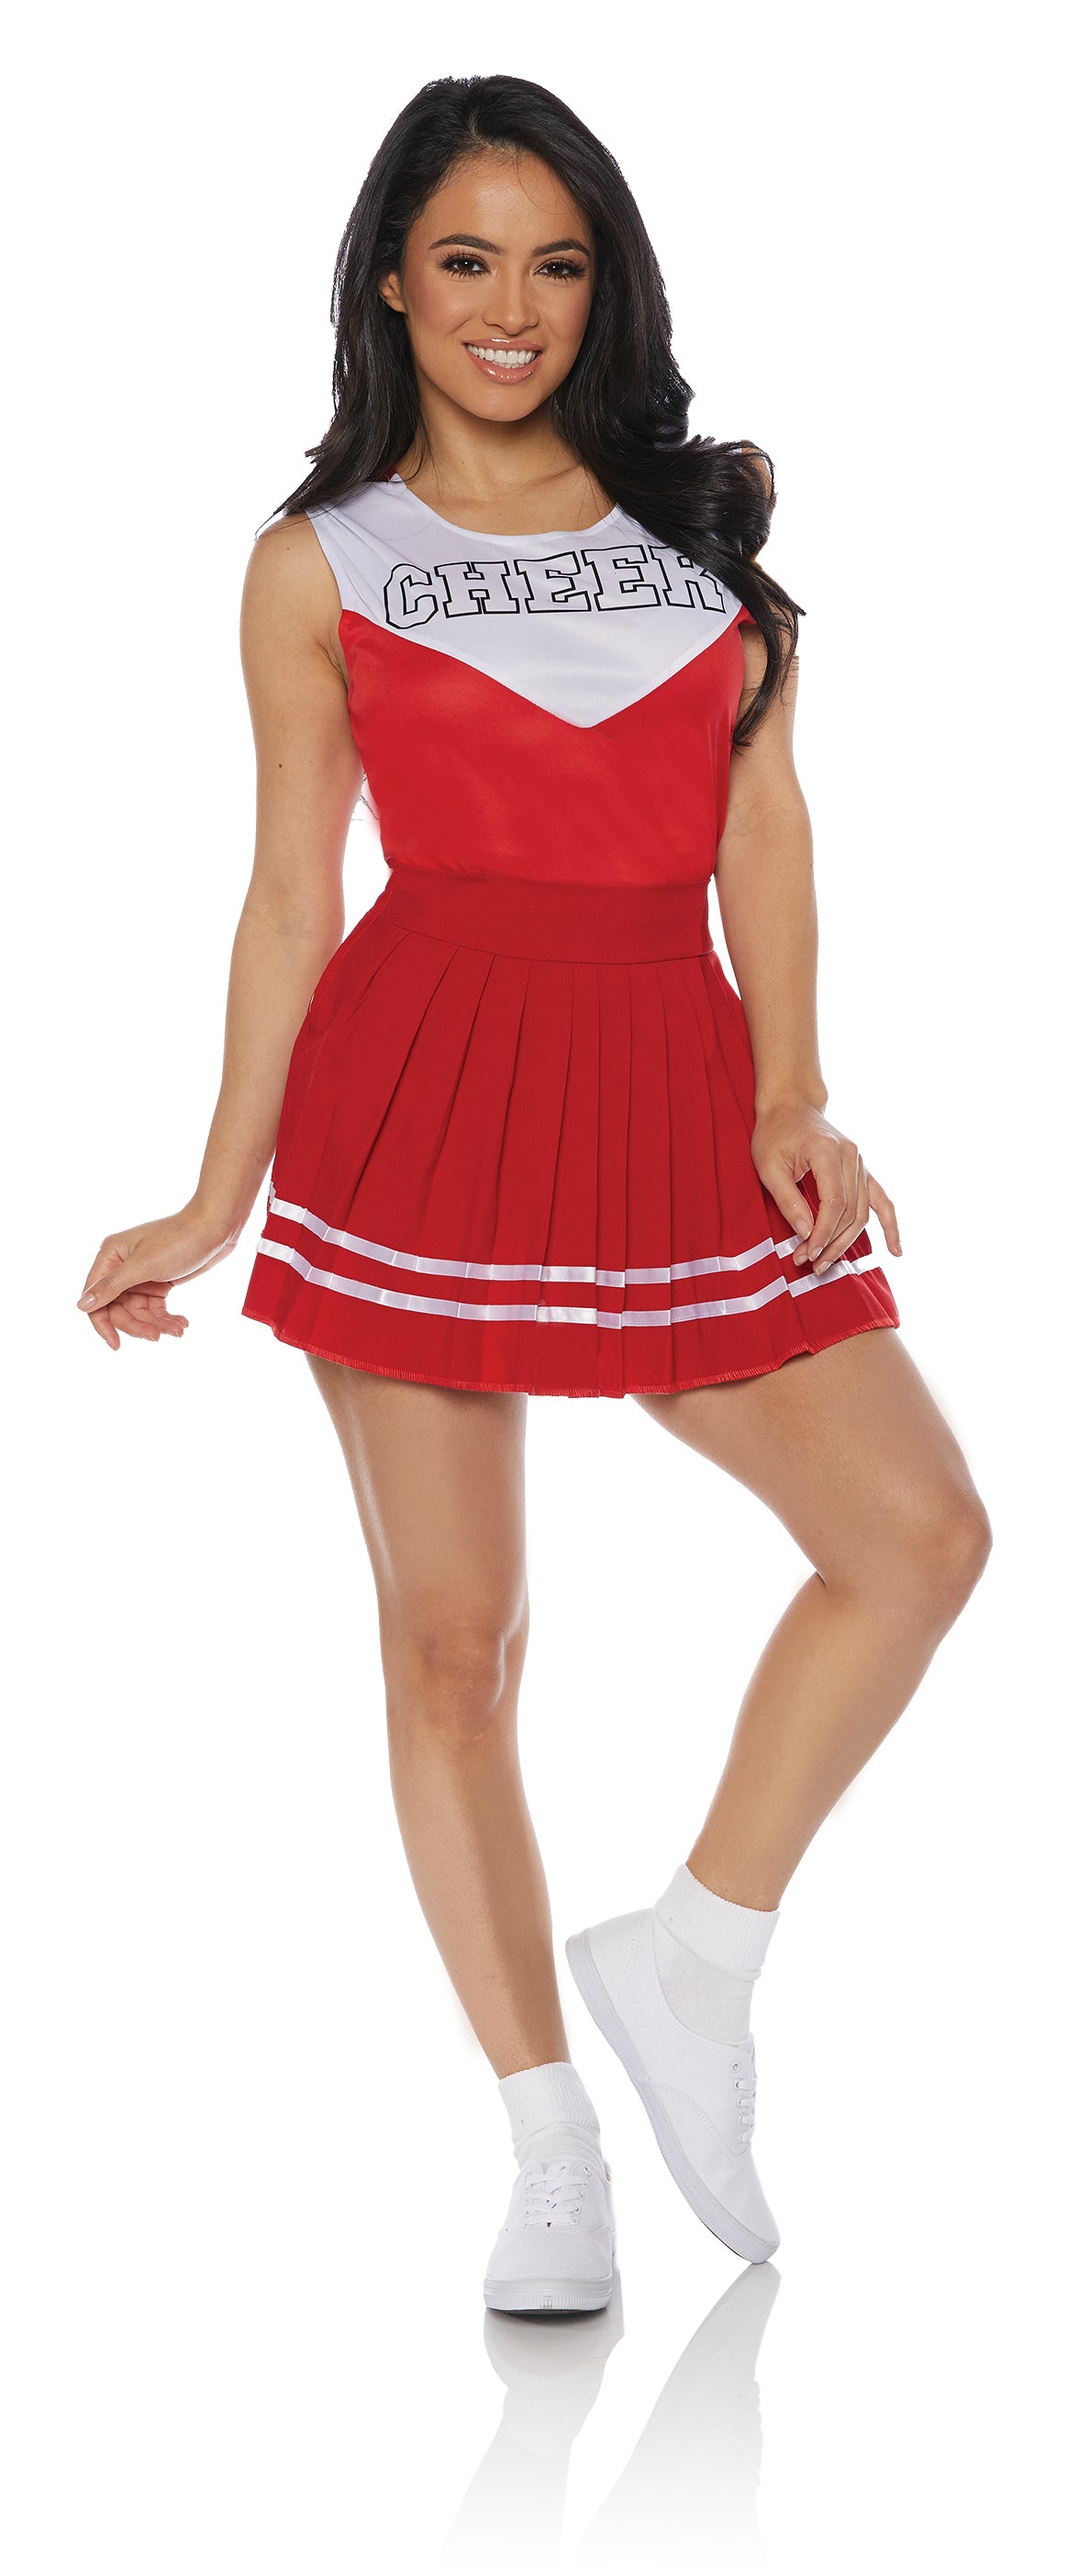 Cheerleader Adult Costume